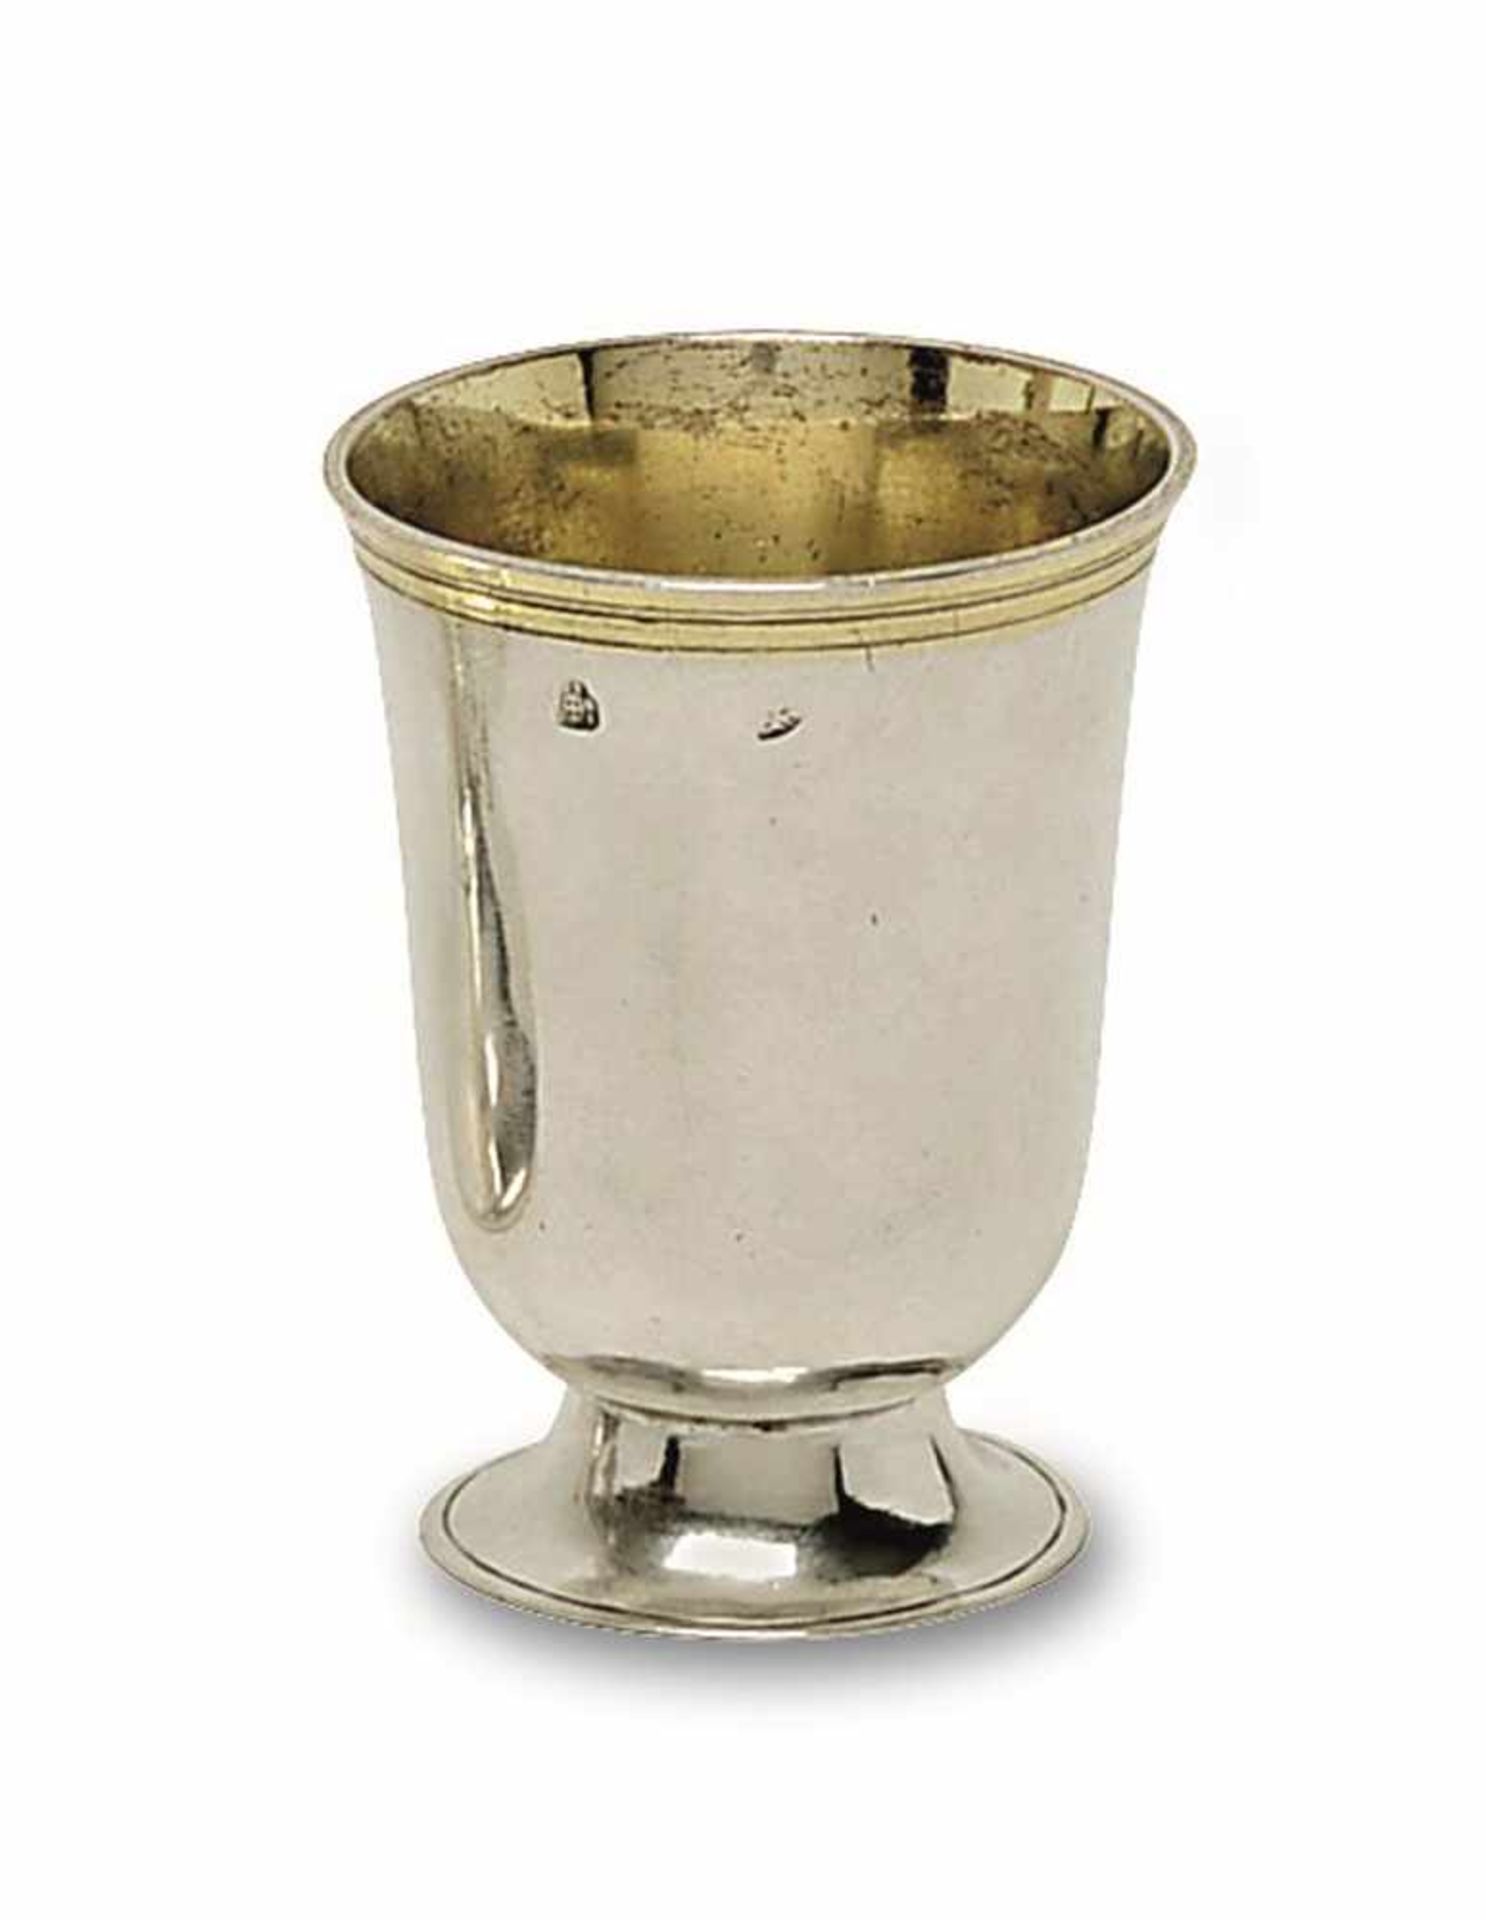 Kleiner Becher Wien, um 1805 Silber, teilvergoldet. Glockenförmiger Becher auf Rundfuß. Gravierte